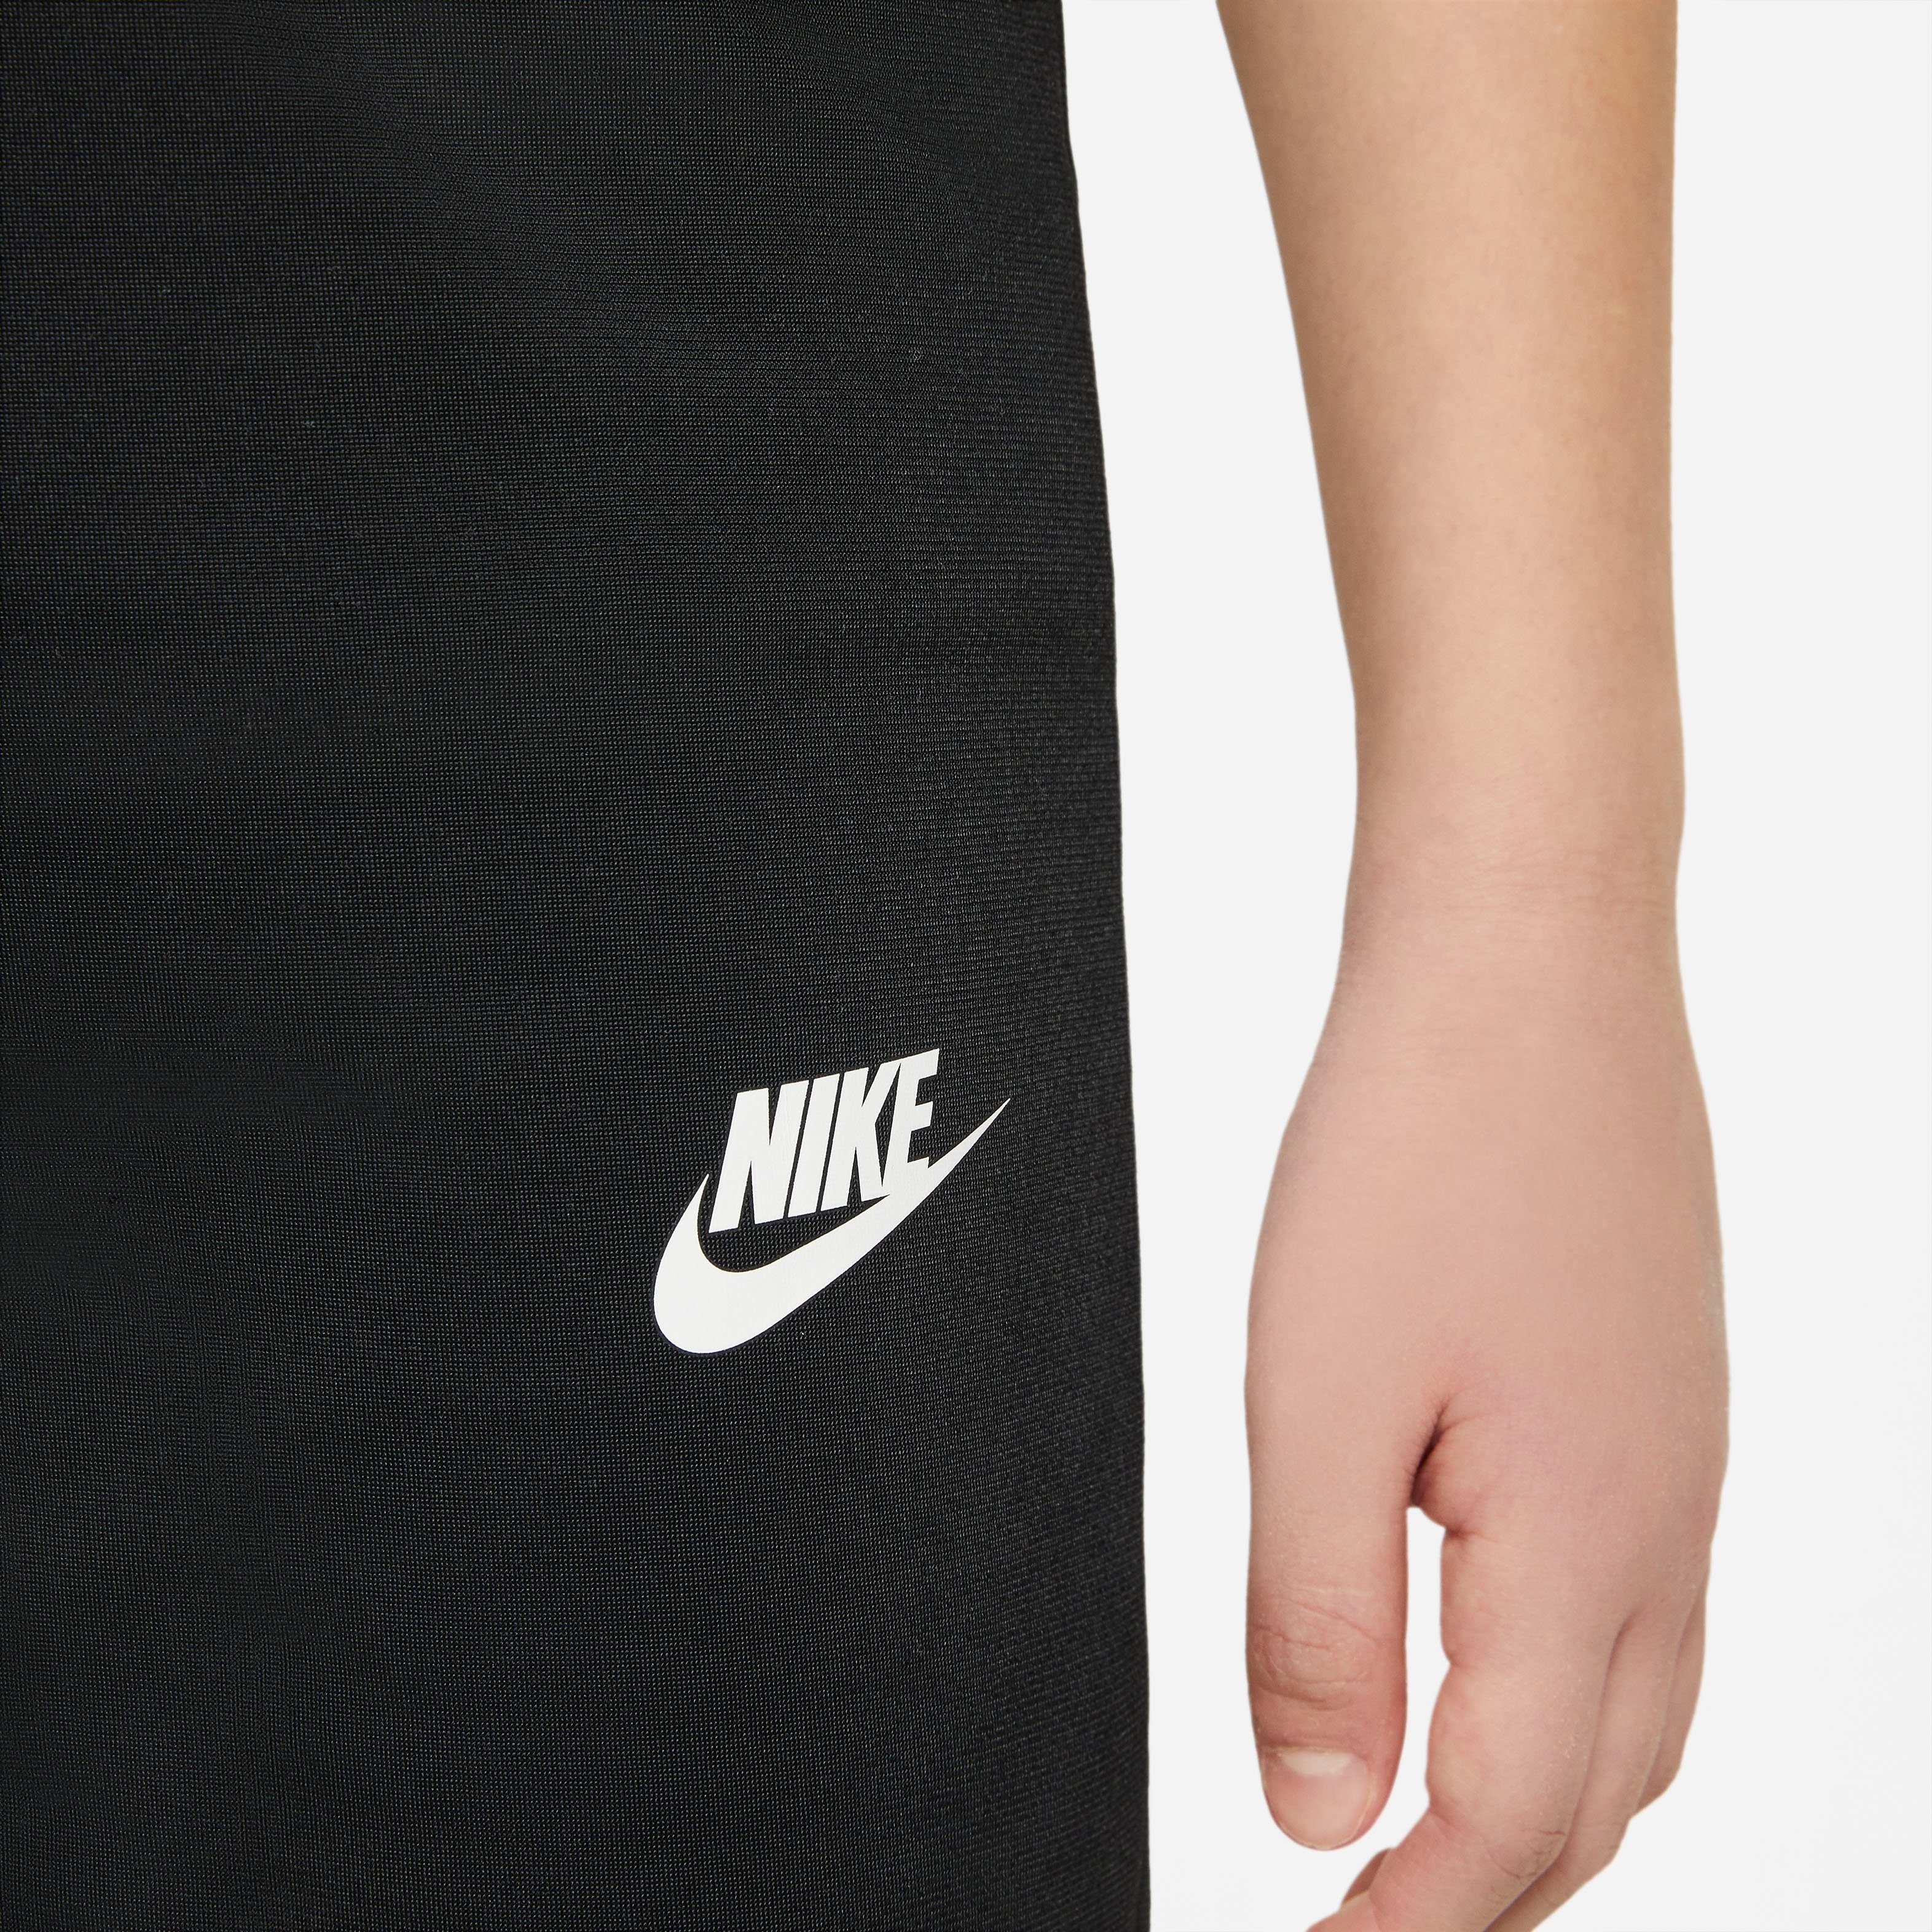 Nike Sportswear Trainingsanzug Big Kids' schwarz Tracksuit